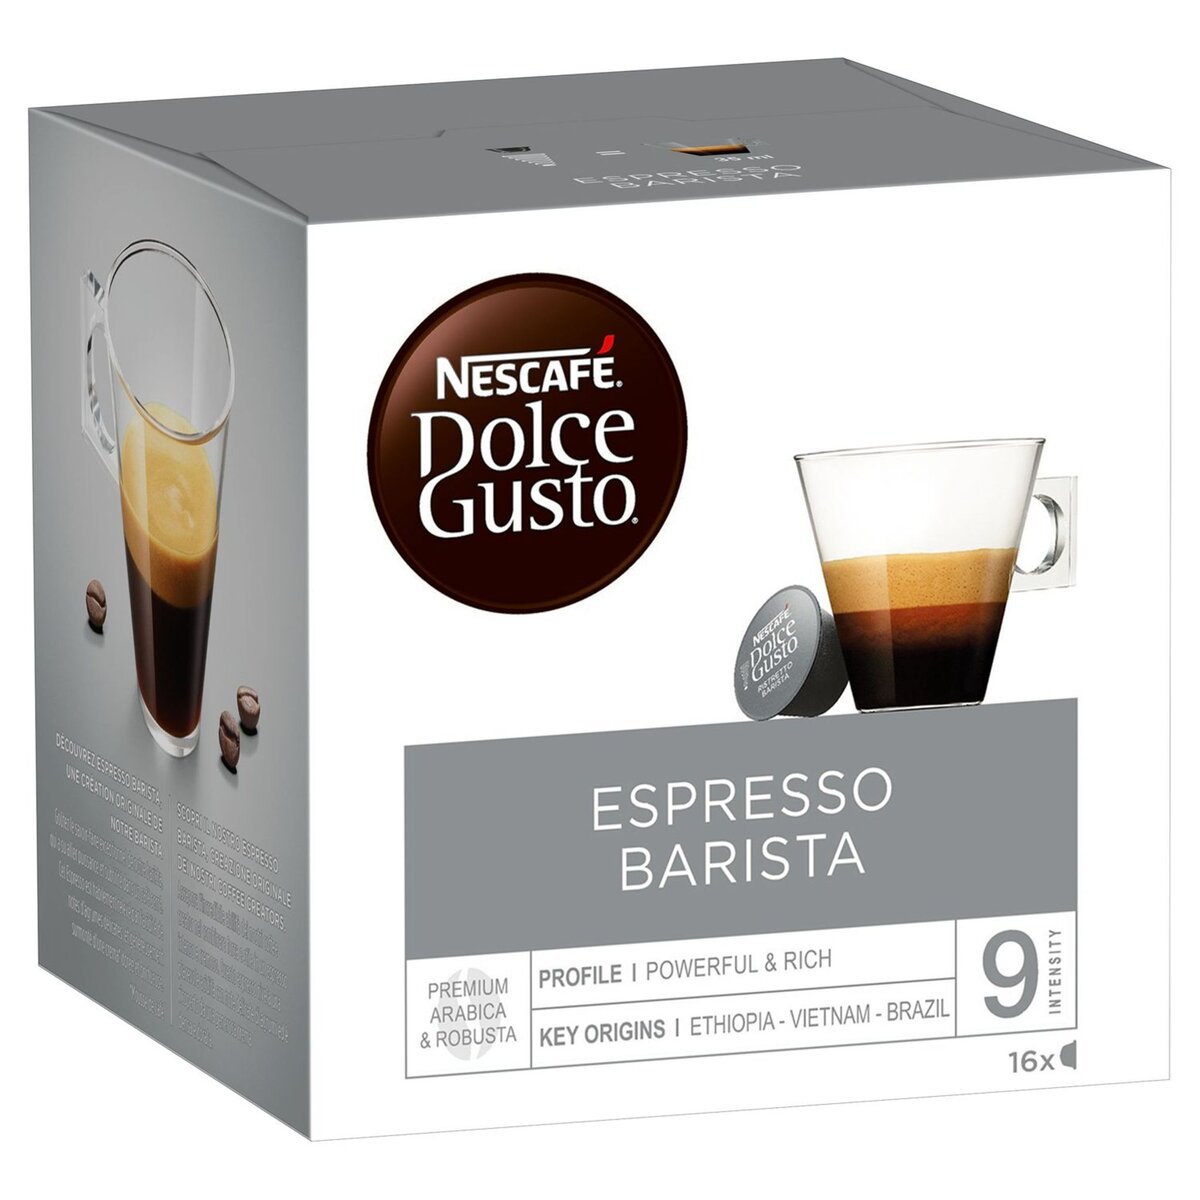 NESCAFE Nescafé espresso barista dolce gusto capsule x16 -120g